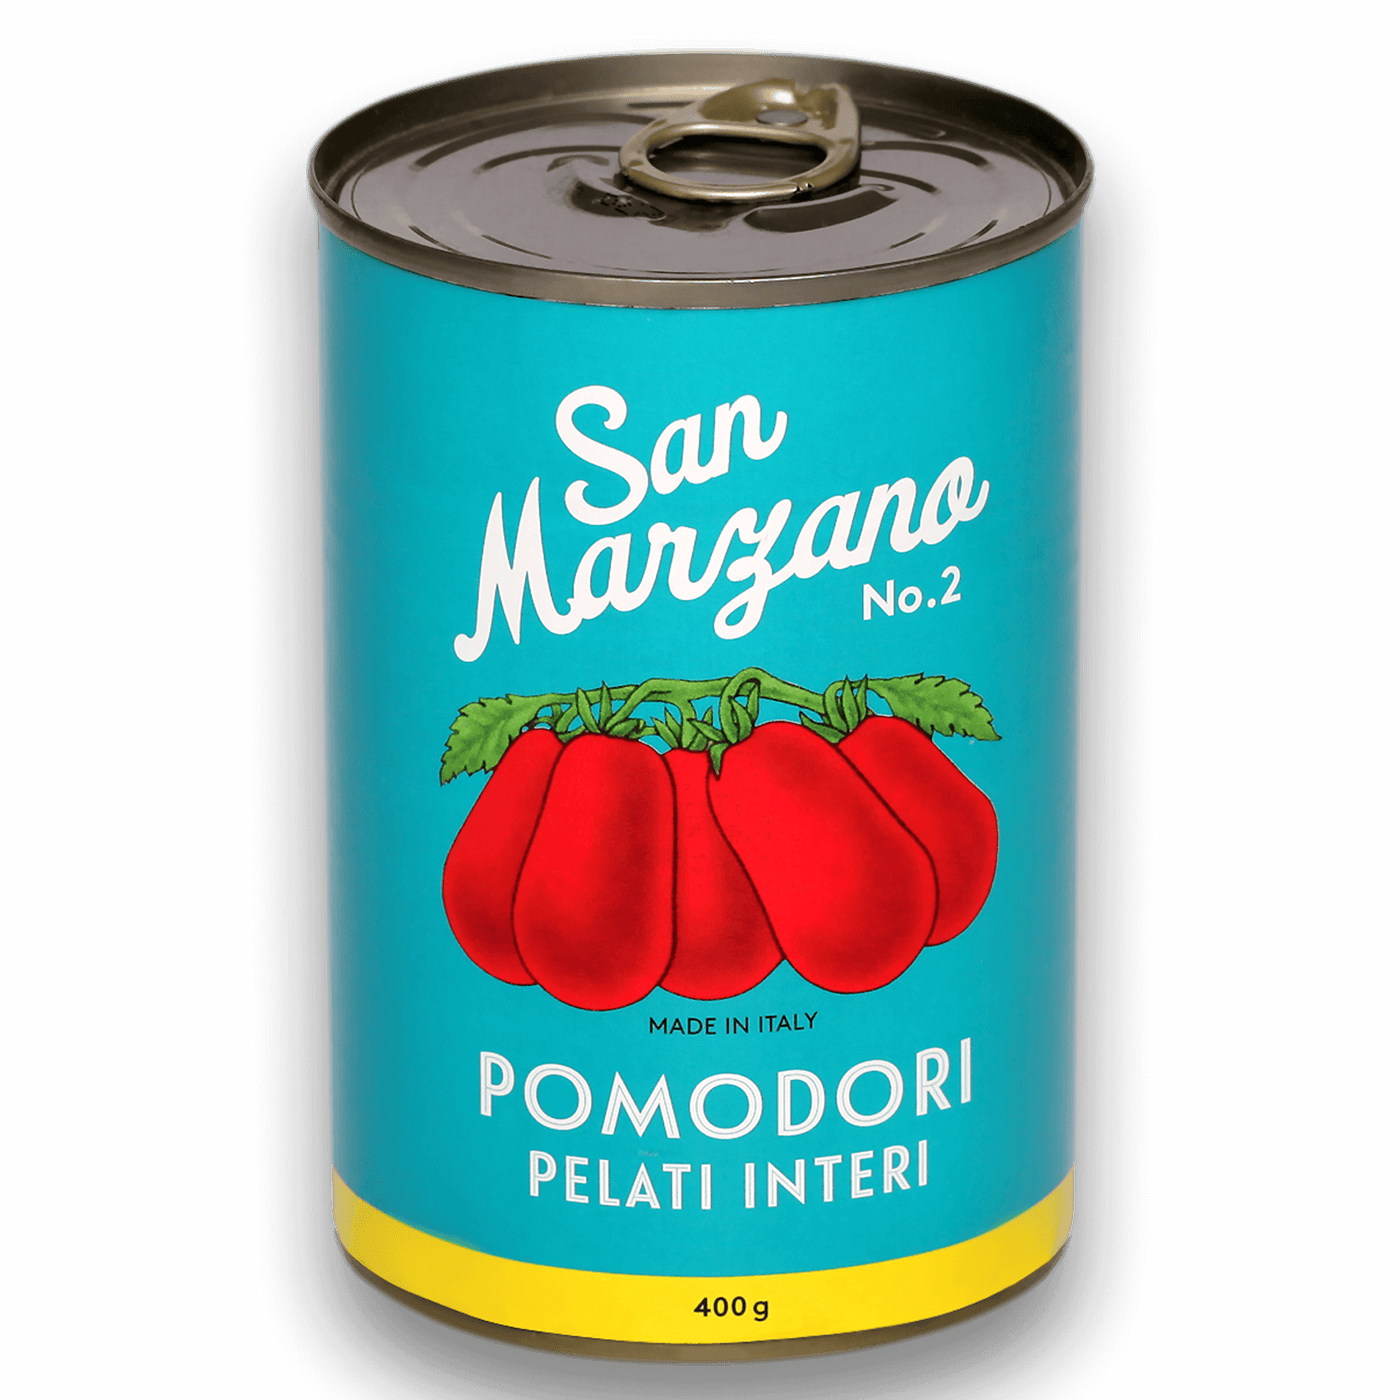 Tomaten Testpaket QUATTRO - San Marzano / Datterini / Tomatenmark / Marzanella